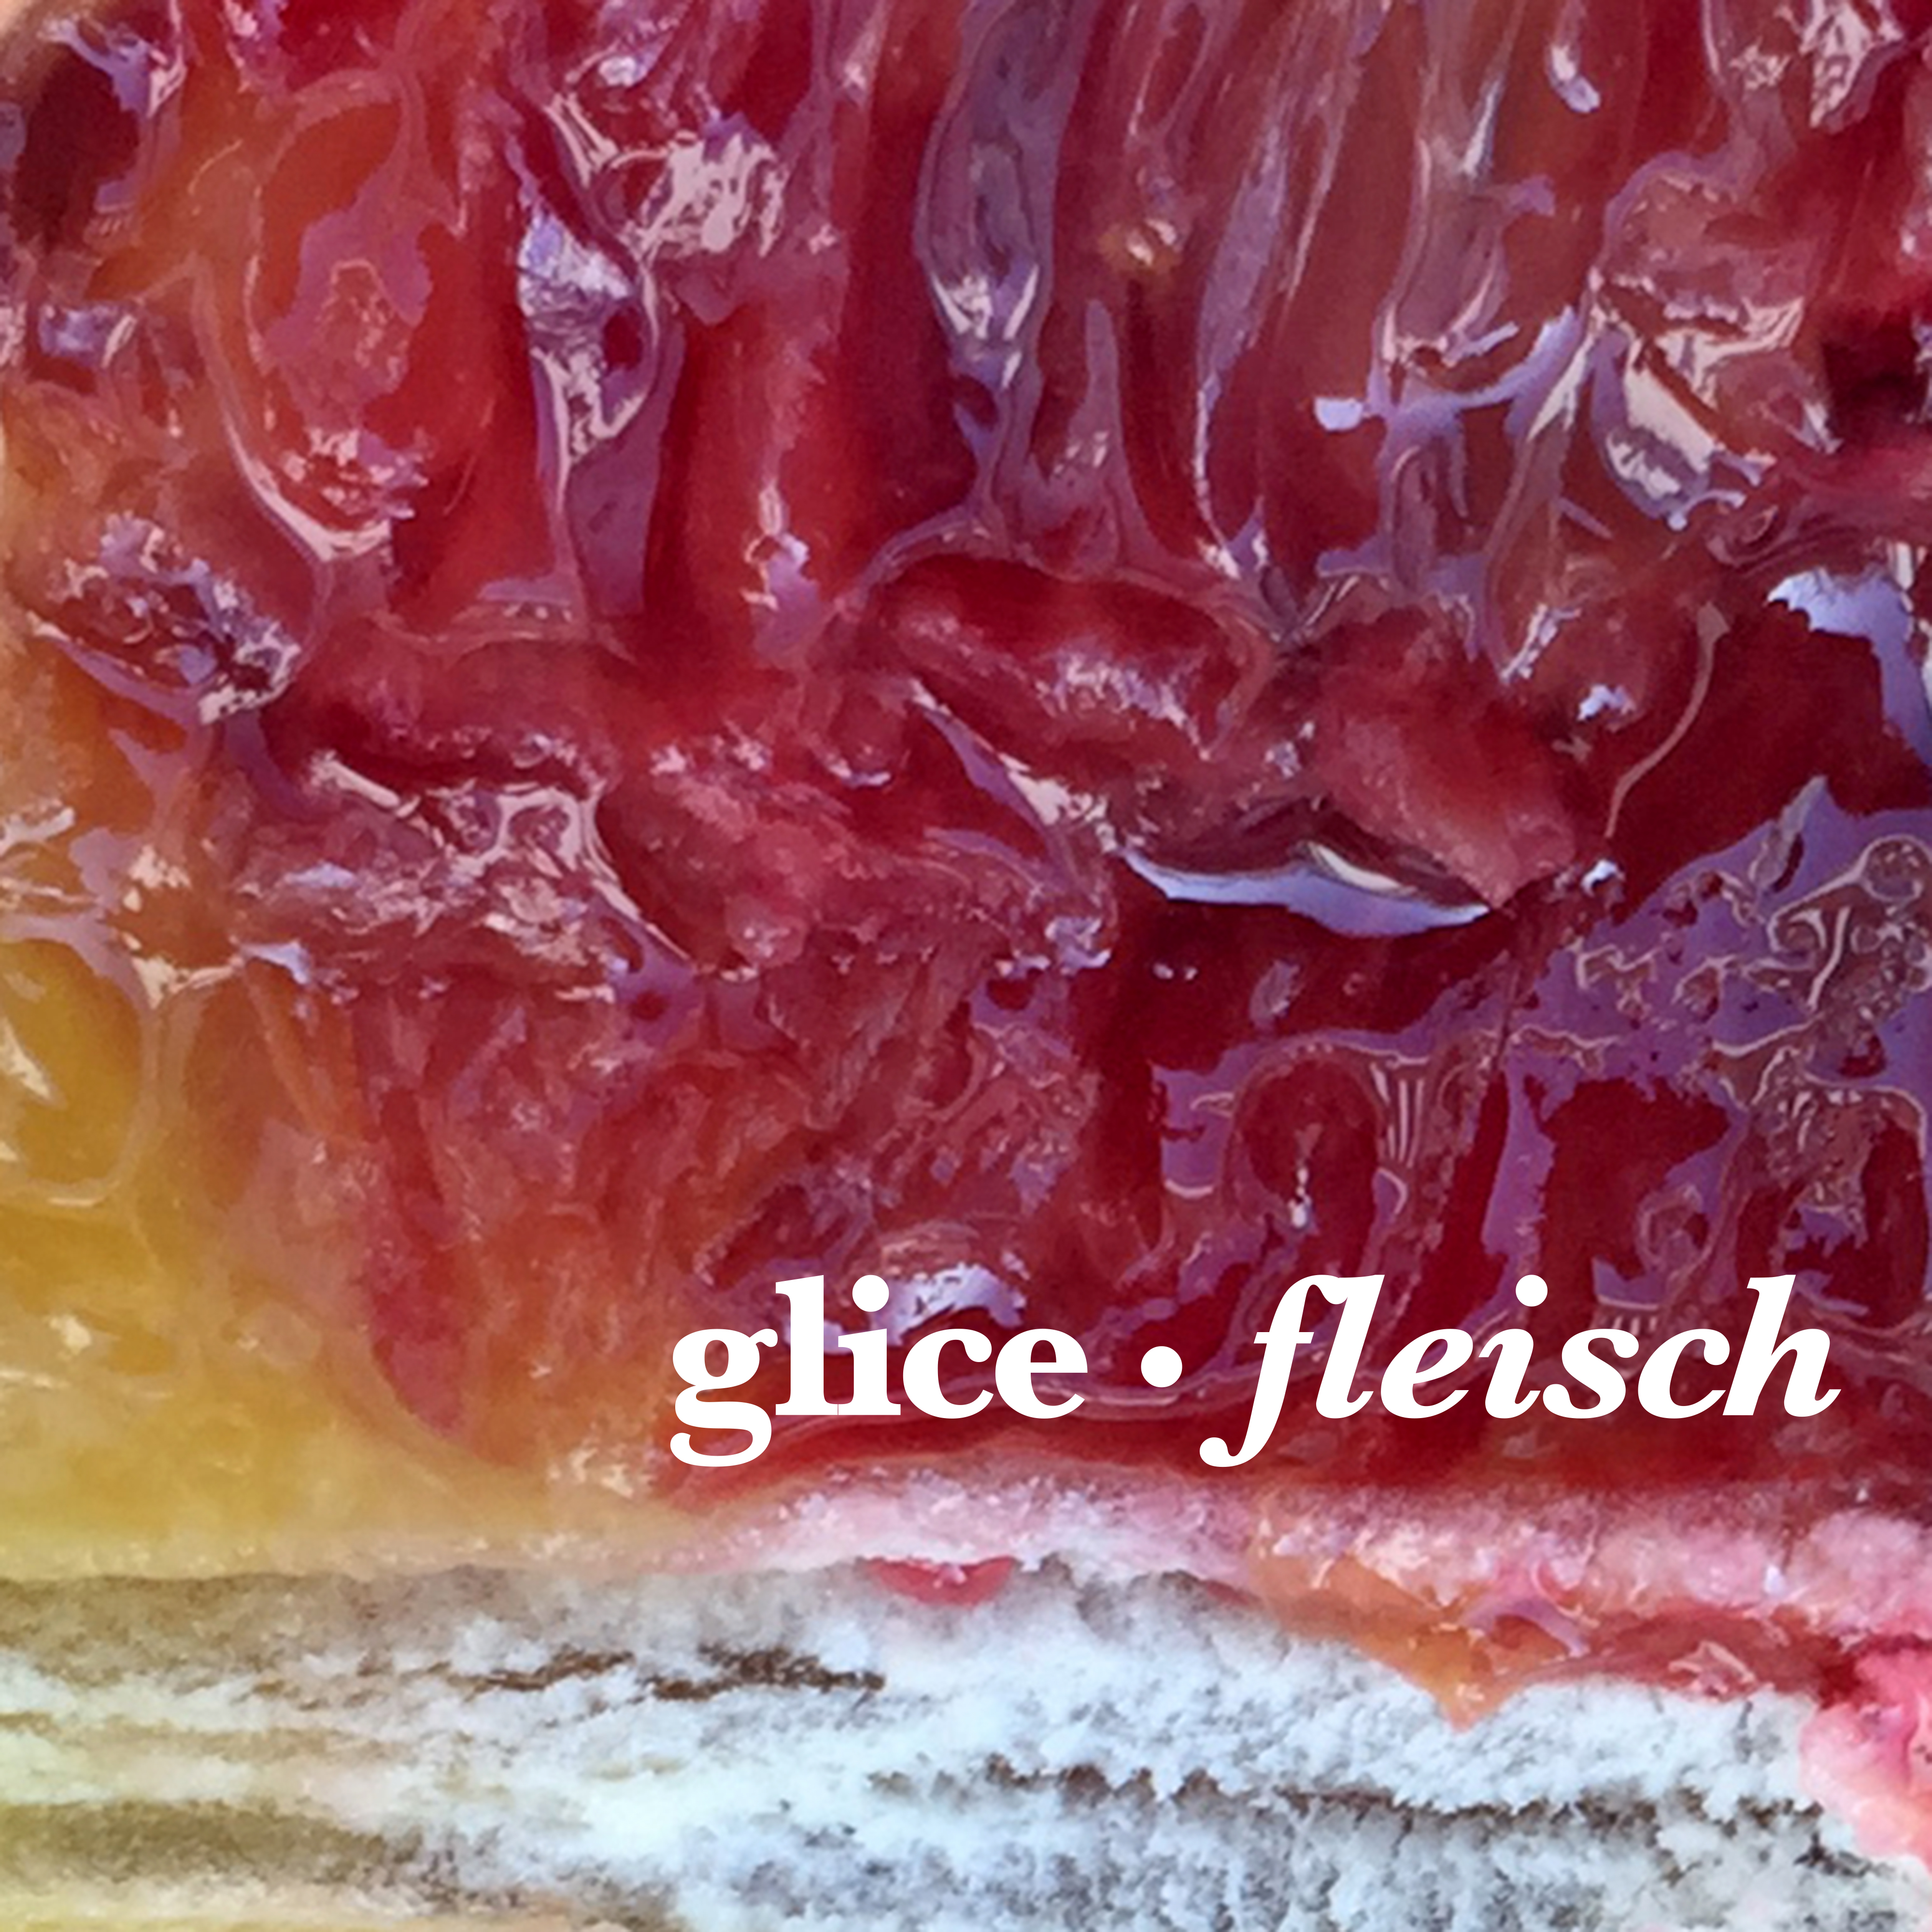 nm073: glice - fleisch